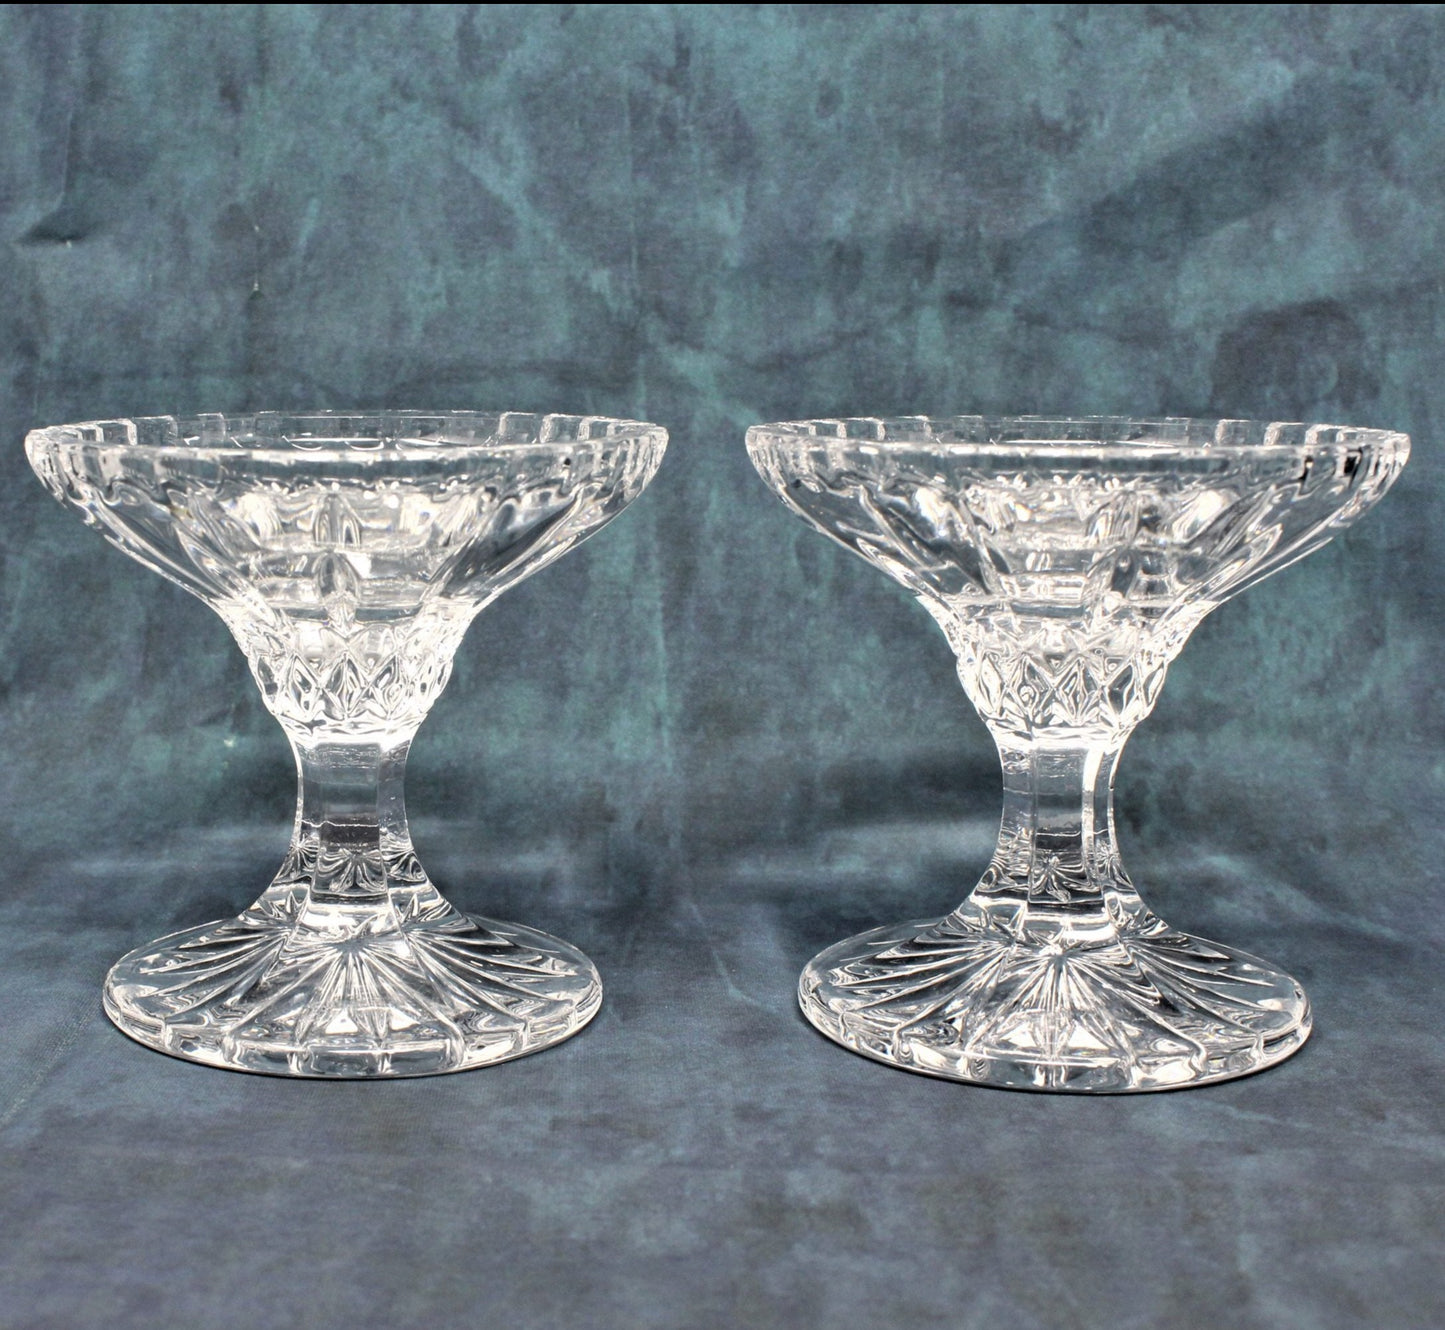 Candle Holders, Nachtmann Bleikristal, Crystal, Set of 2, Vintage